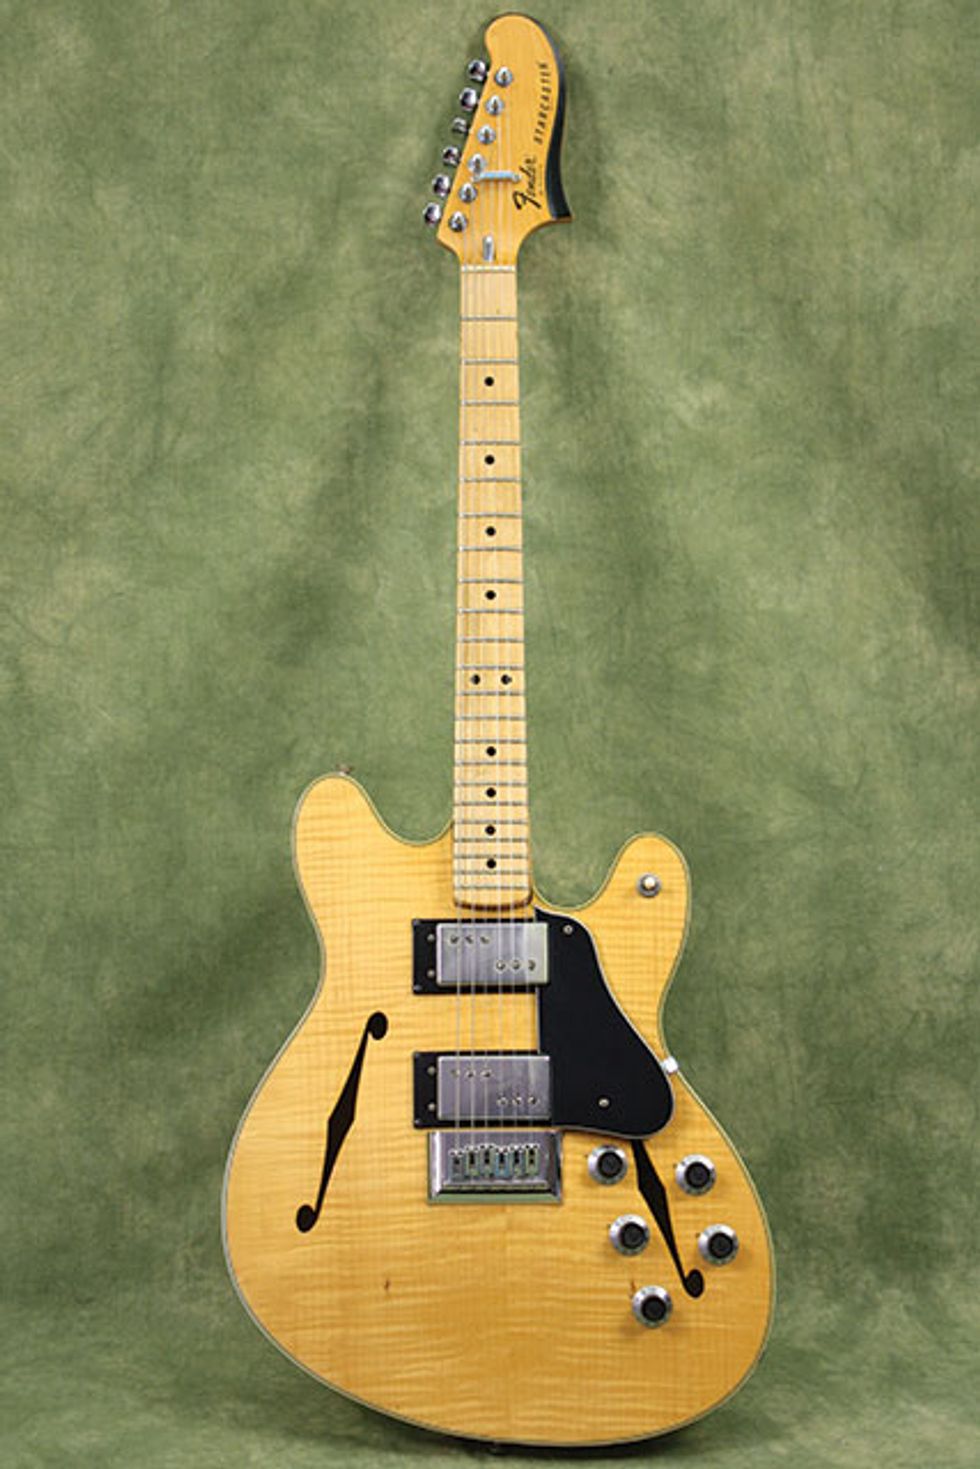 February: 1976 Fender Starcaster